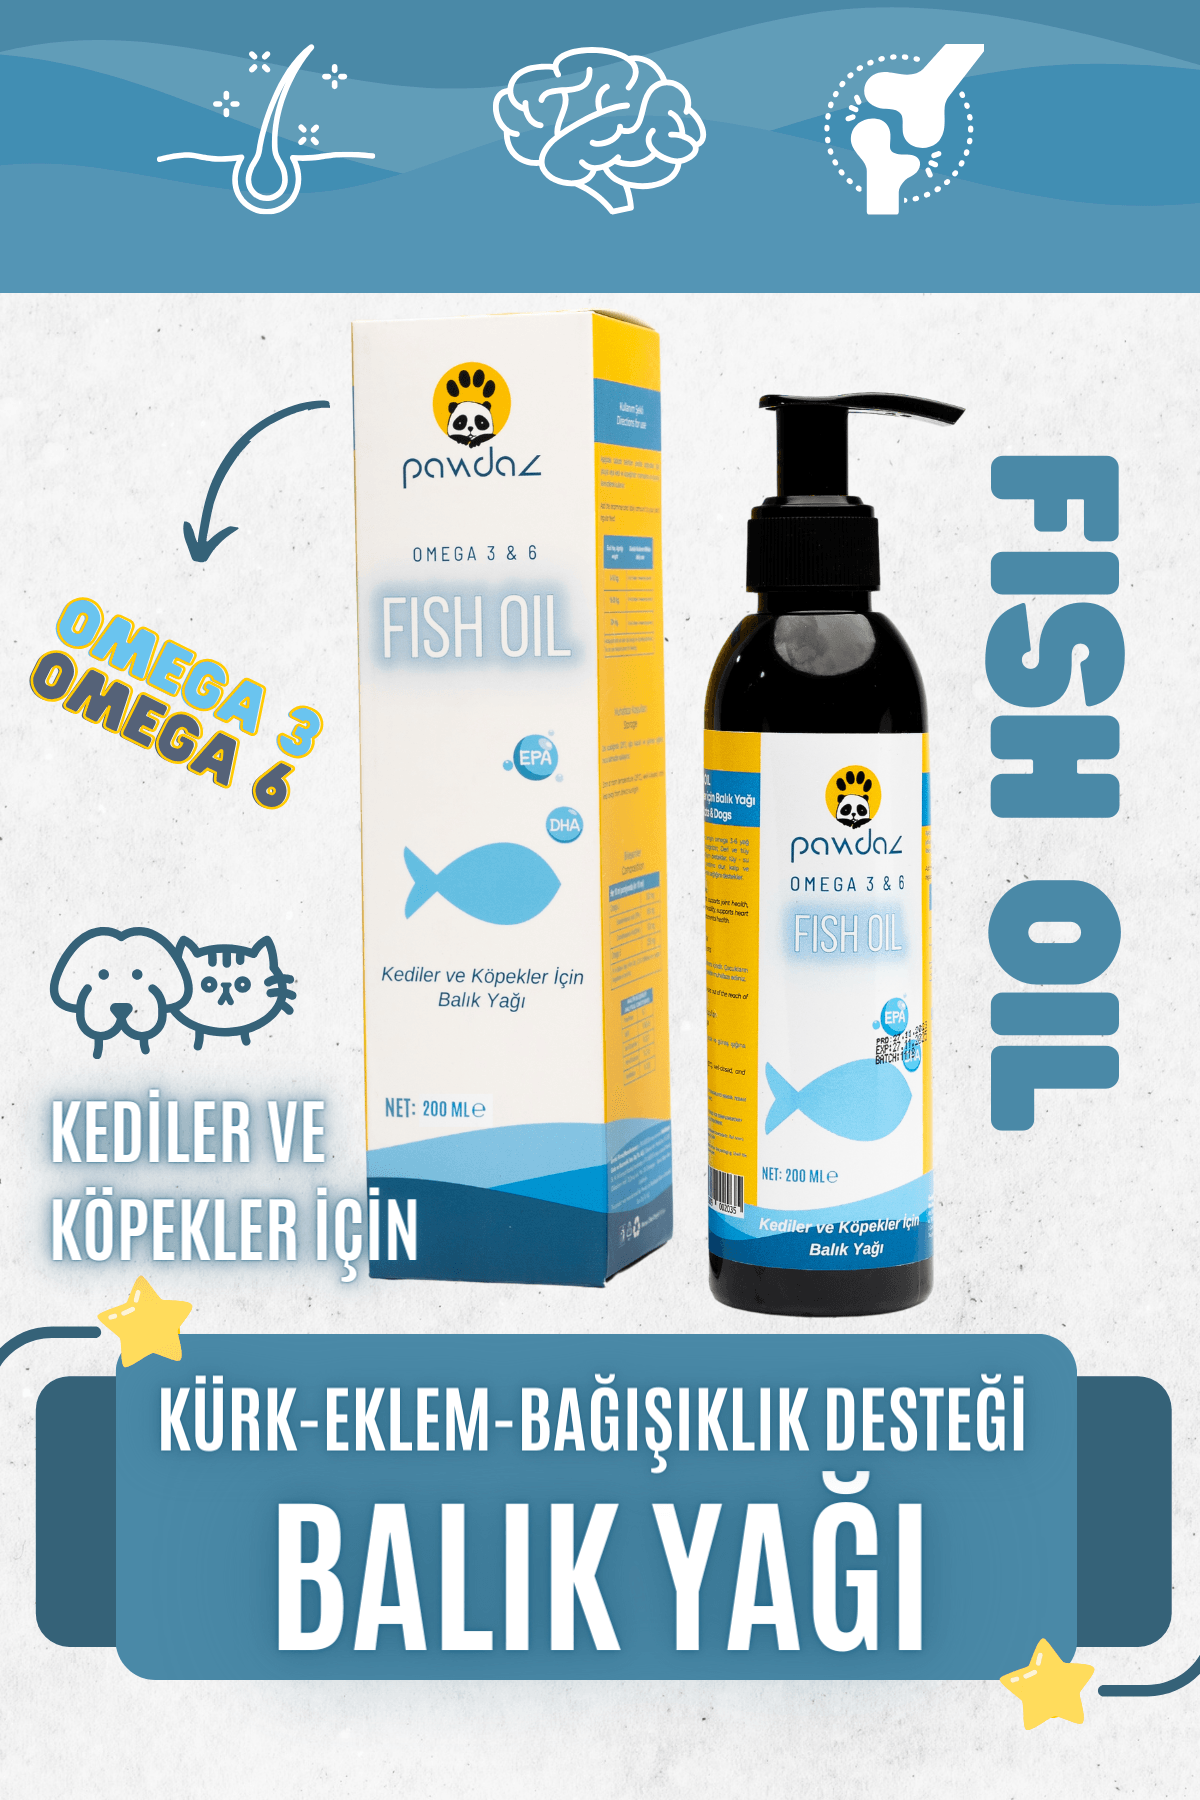 Fish Oil - 200 ml. - Deri ve tüy sağlığını destekleyen balık yağı (omega 3-6)